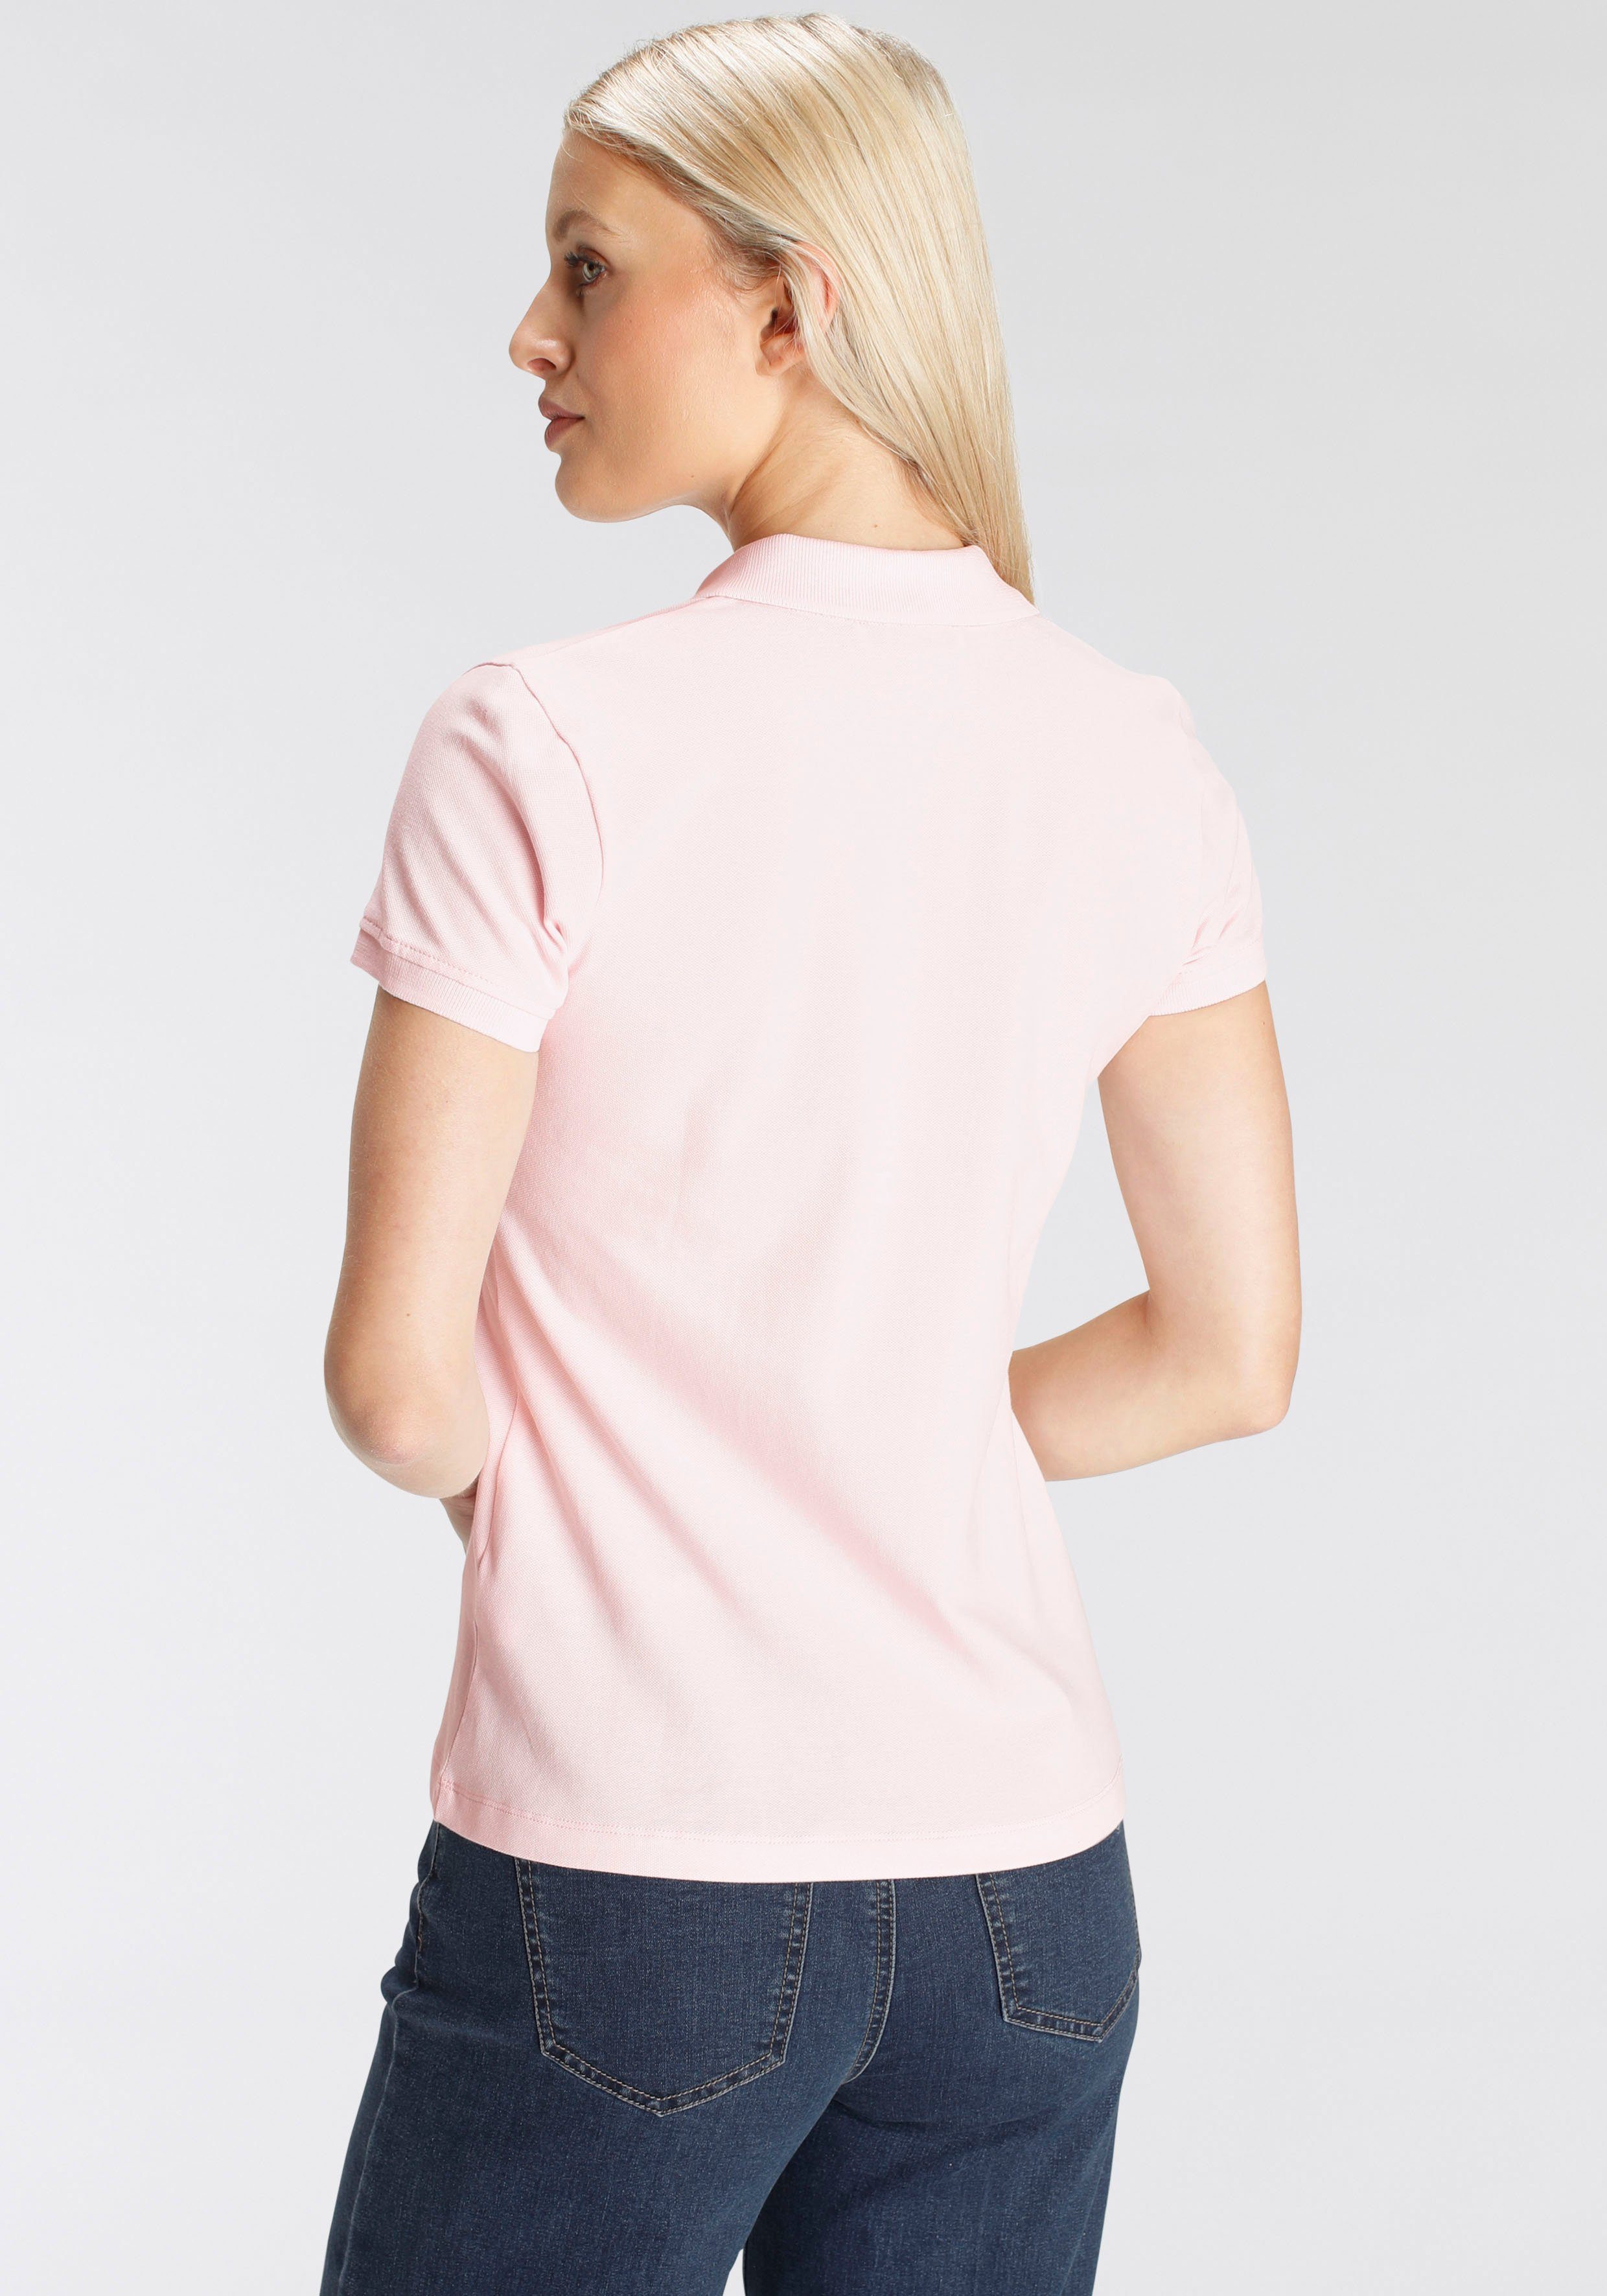 DELMAO Poloshirt rosa klassischer - Form in Farben in verschiedenen NEUE MARKE